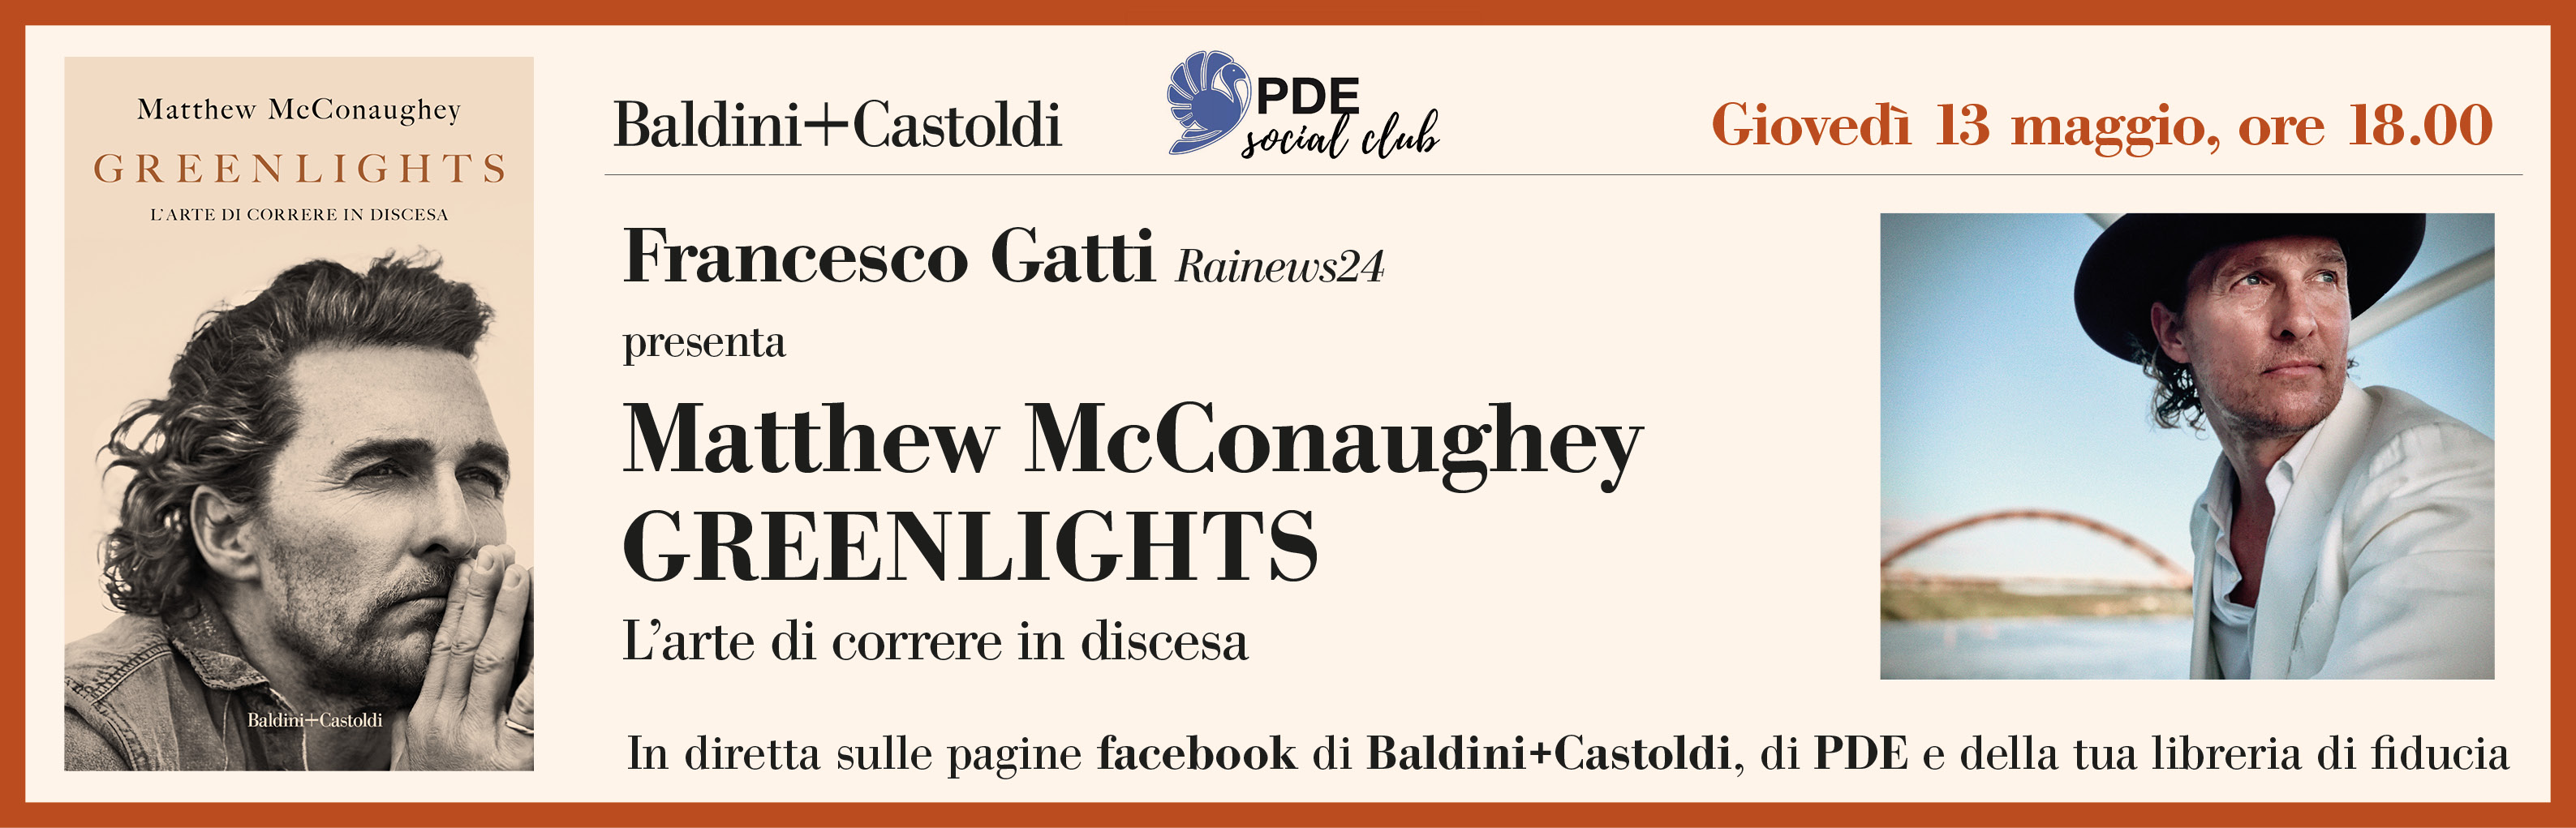 McConaughey – Baldini+Castoldi